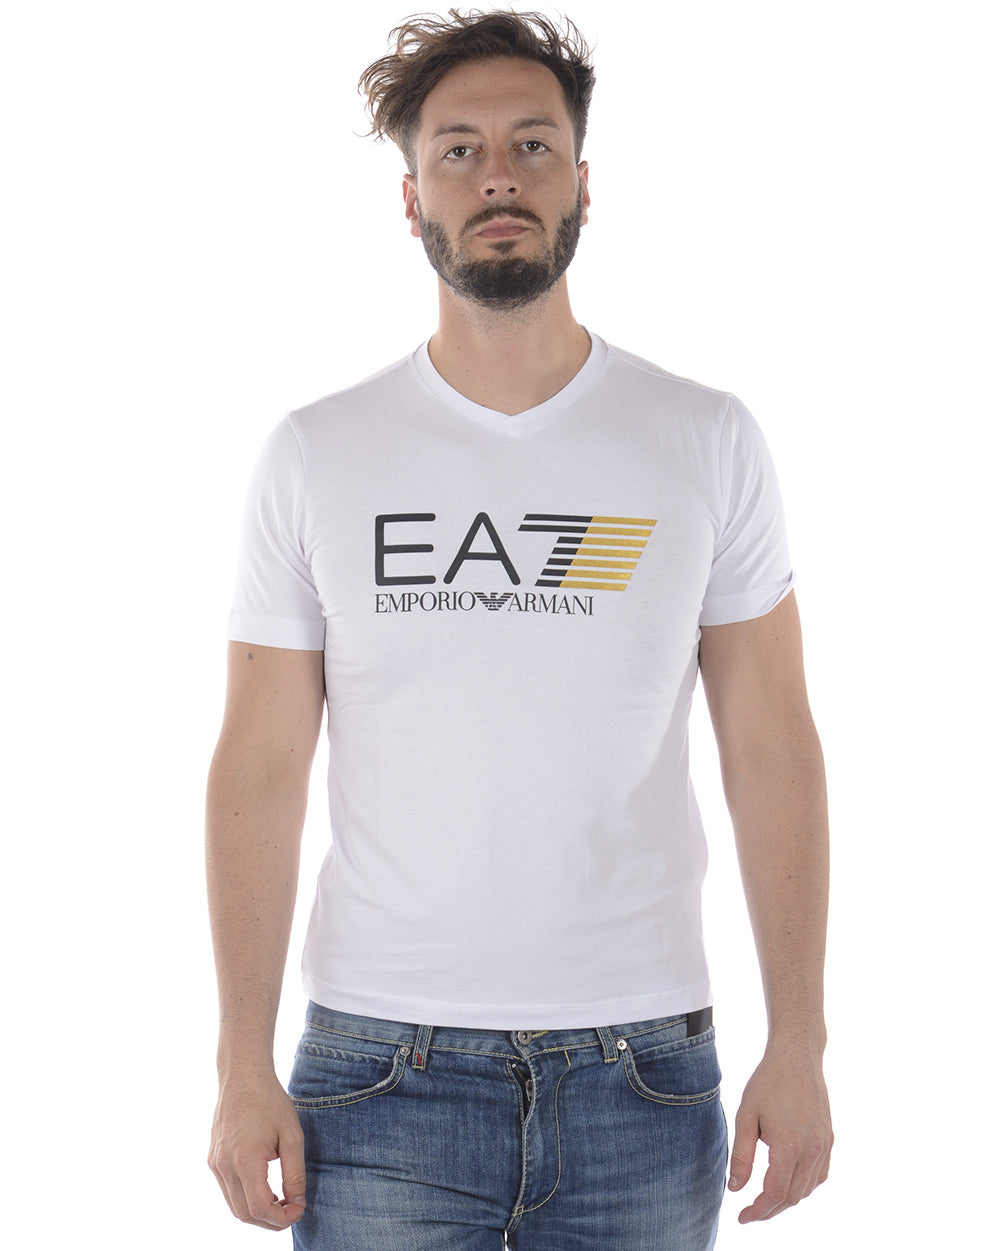 Maglietta EA7 Emporio Armani Rossa - mem39